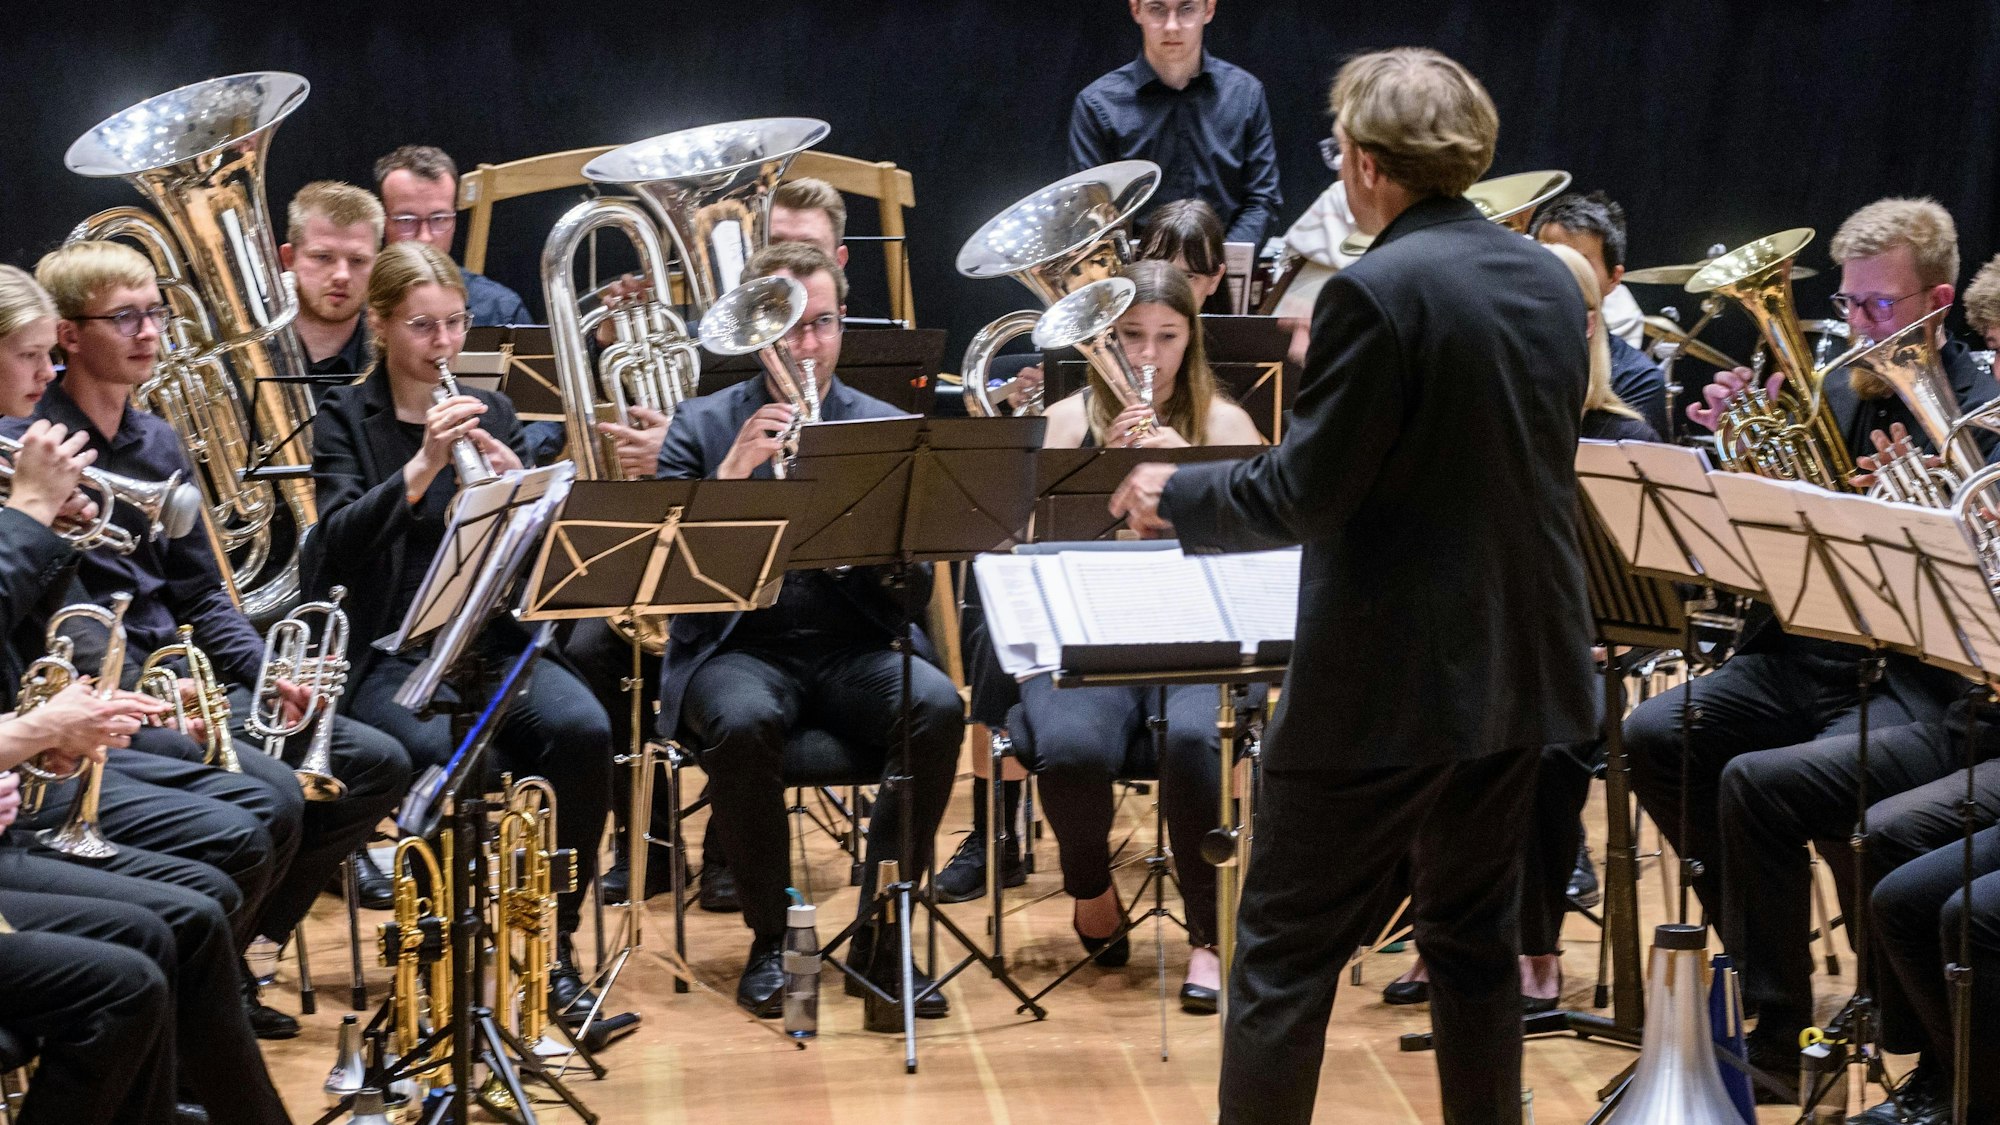 Die Youth Brass Band (YBB) NRW kommt mit barocken und jazzigen Tönen ins Medio Rhein-Erft nach Berghiem.